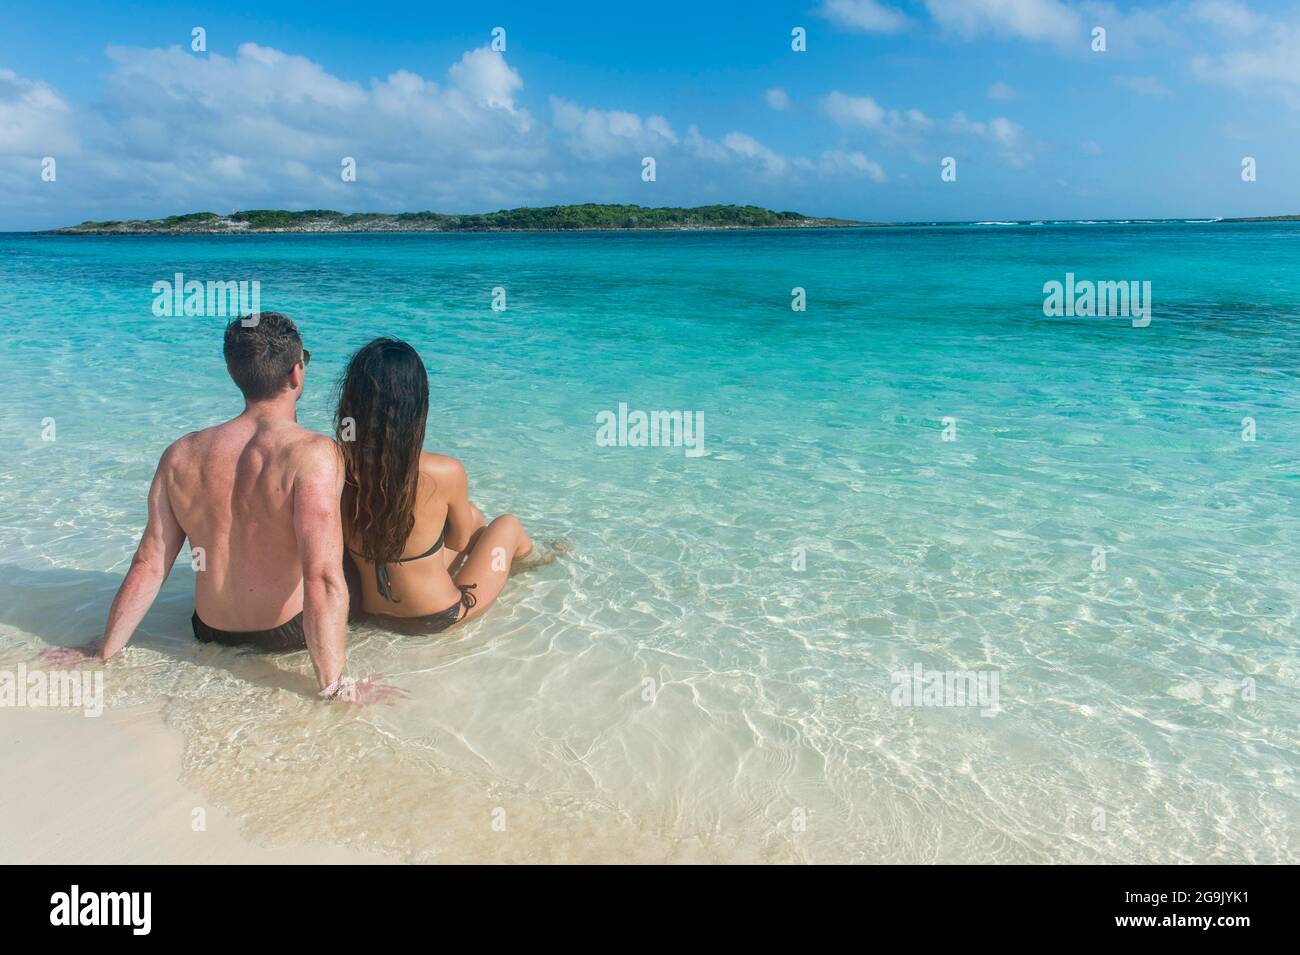 Pärchen, die an einem weißen Sandstrand im türkisfarbenen Wasser der Exumas, Bahamas, Karibik, sitzen Stockfoto